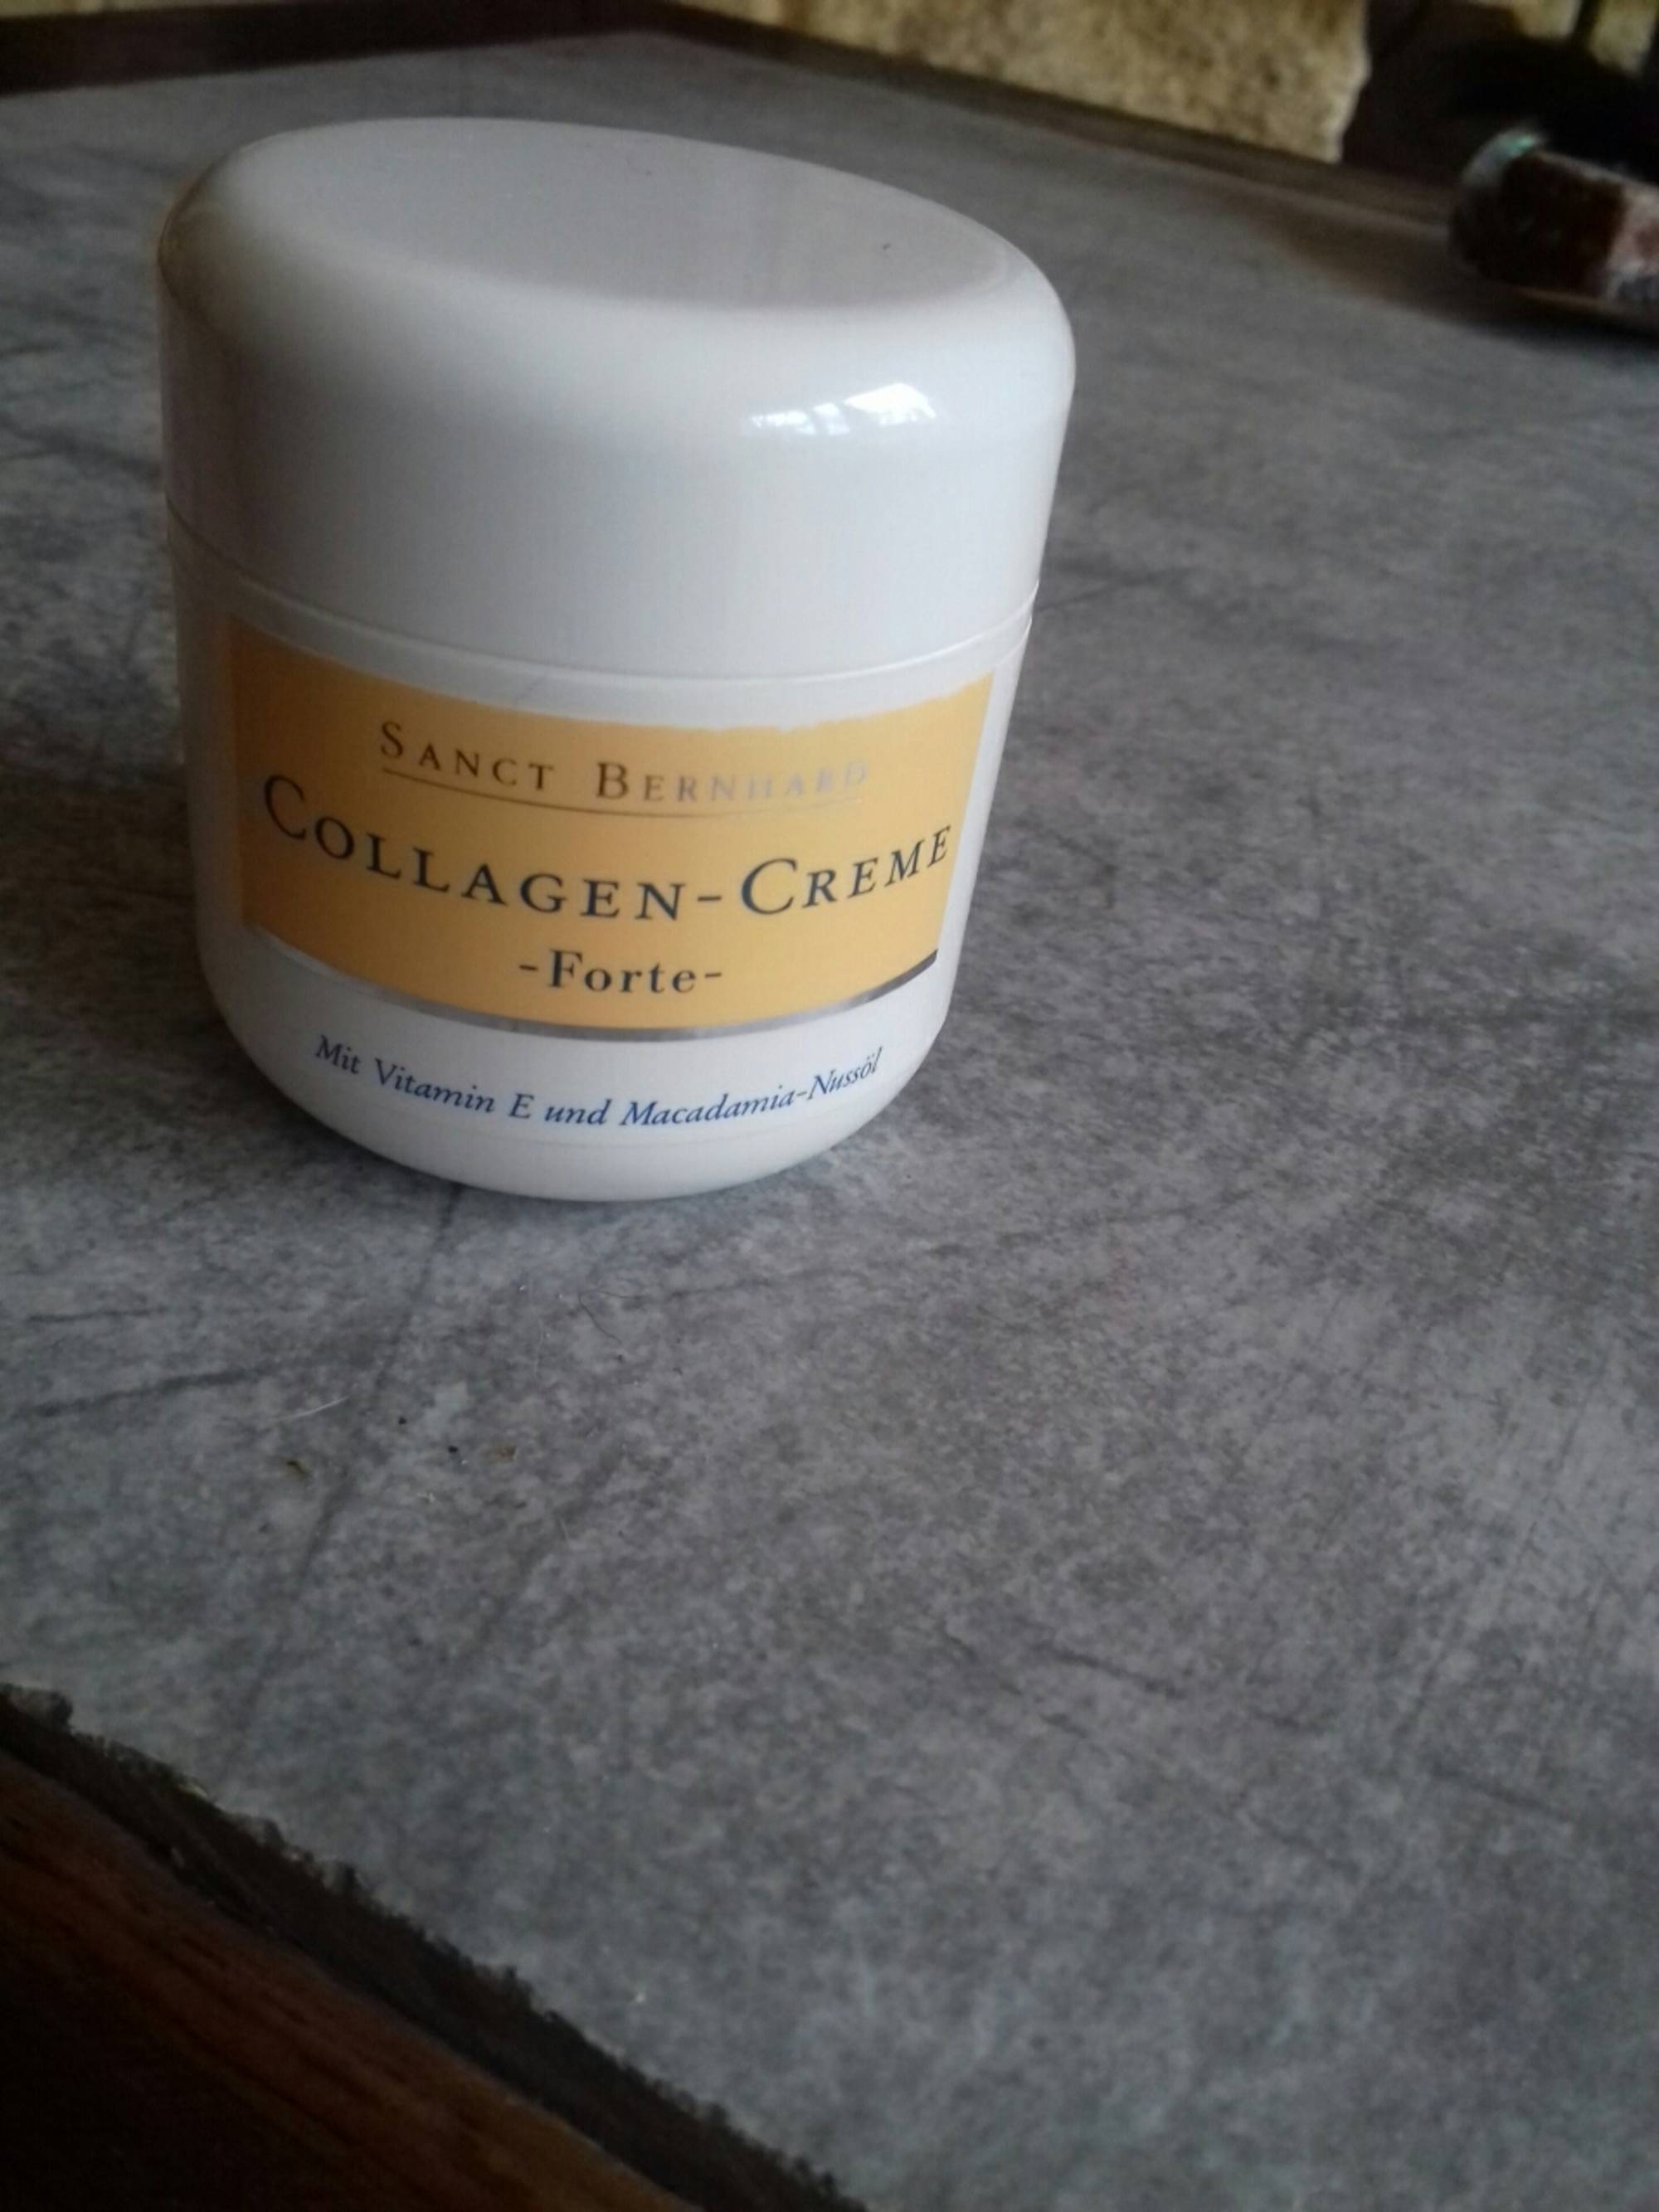 SANCT BERNHARD - Collagen creme forte